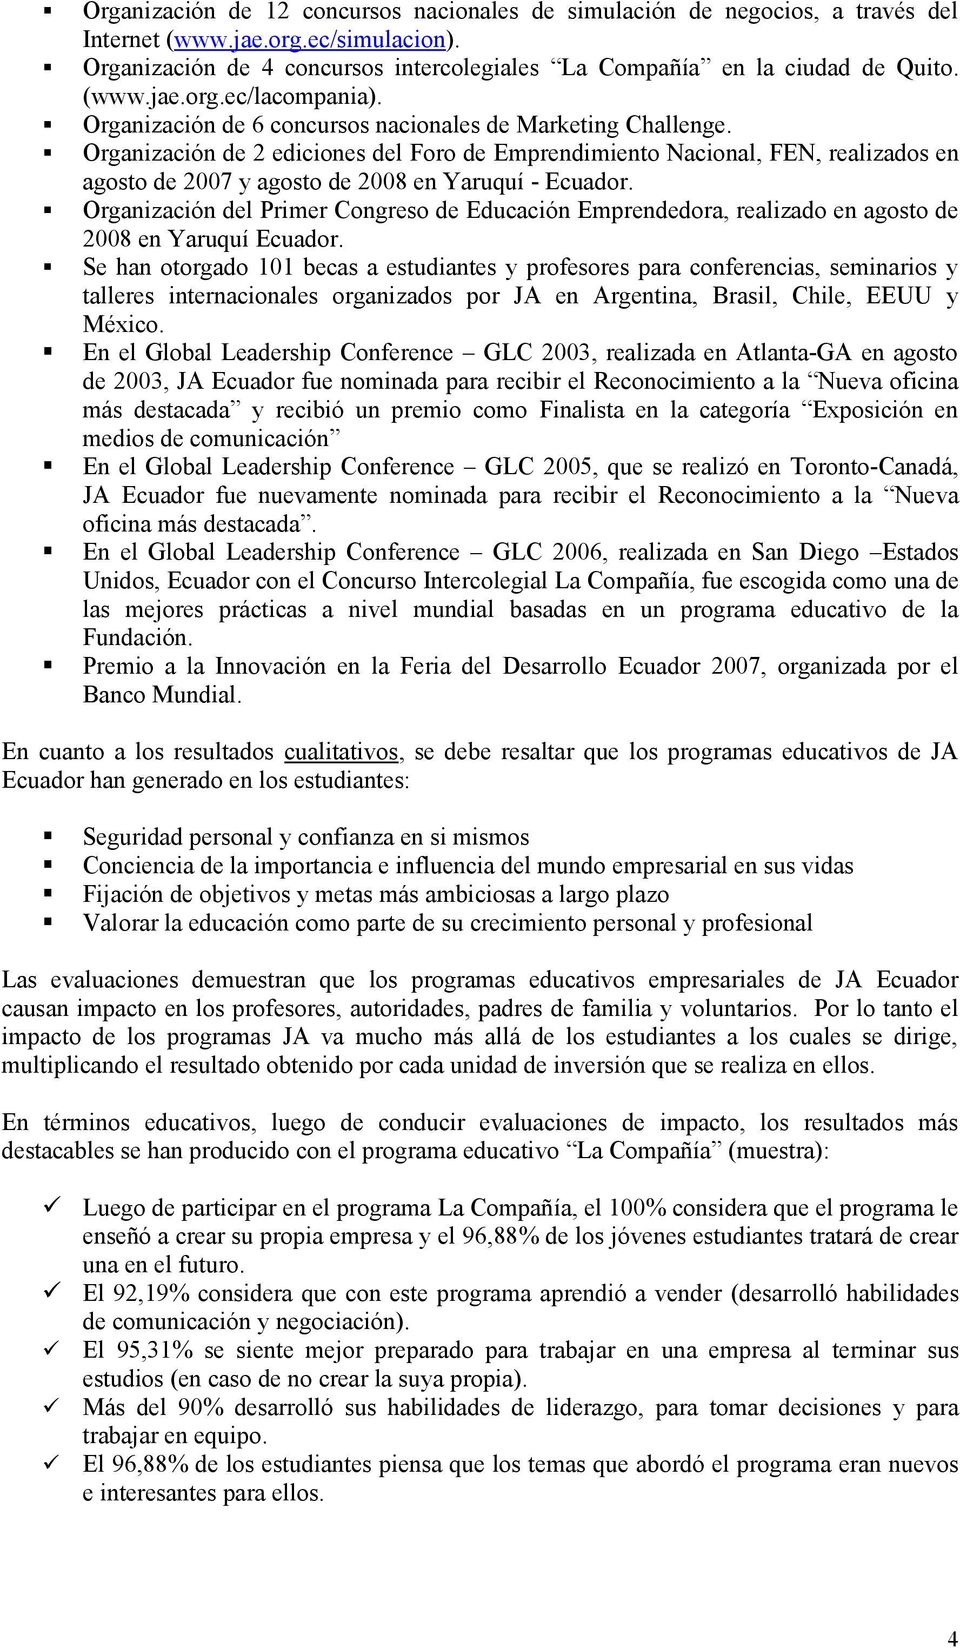 Organización de 2 ediciones del Foro de Emprendimiento Nacional, FEN, realizados en agosto de 2007 y agosto de 2008 en Yaruquí - Ecuador.